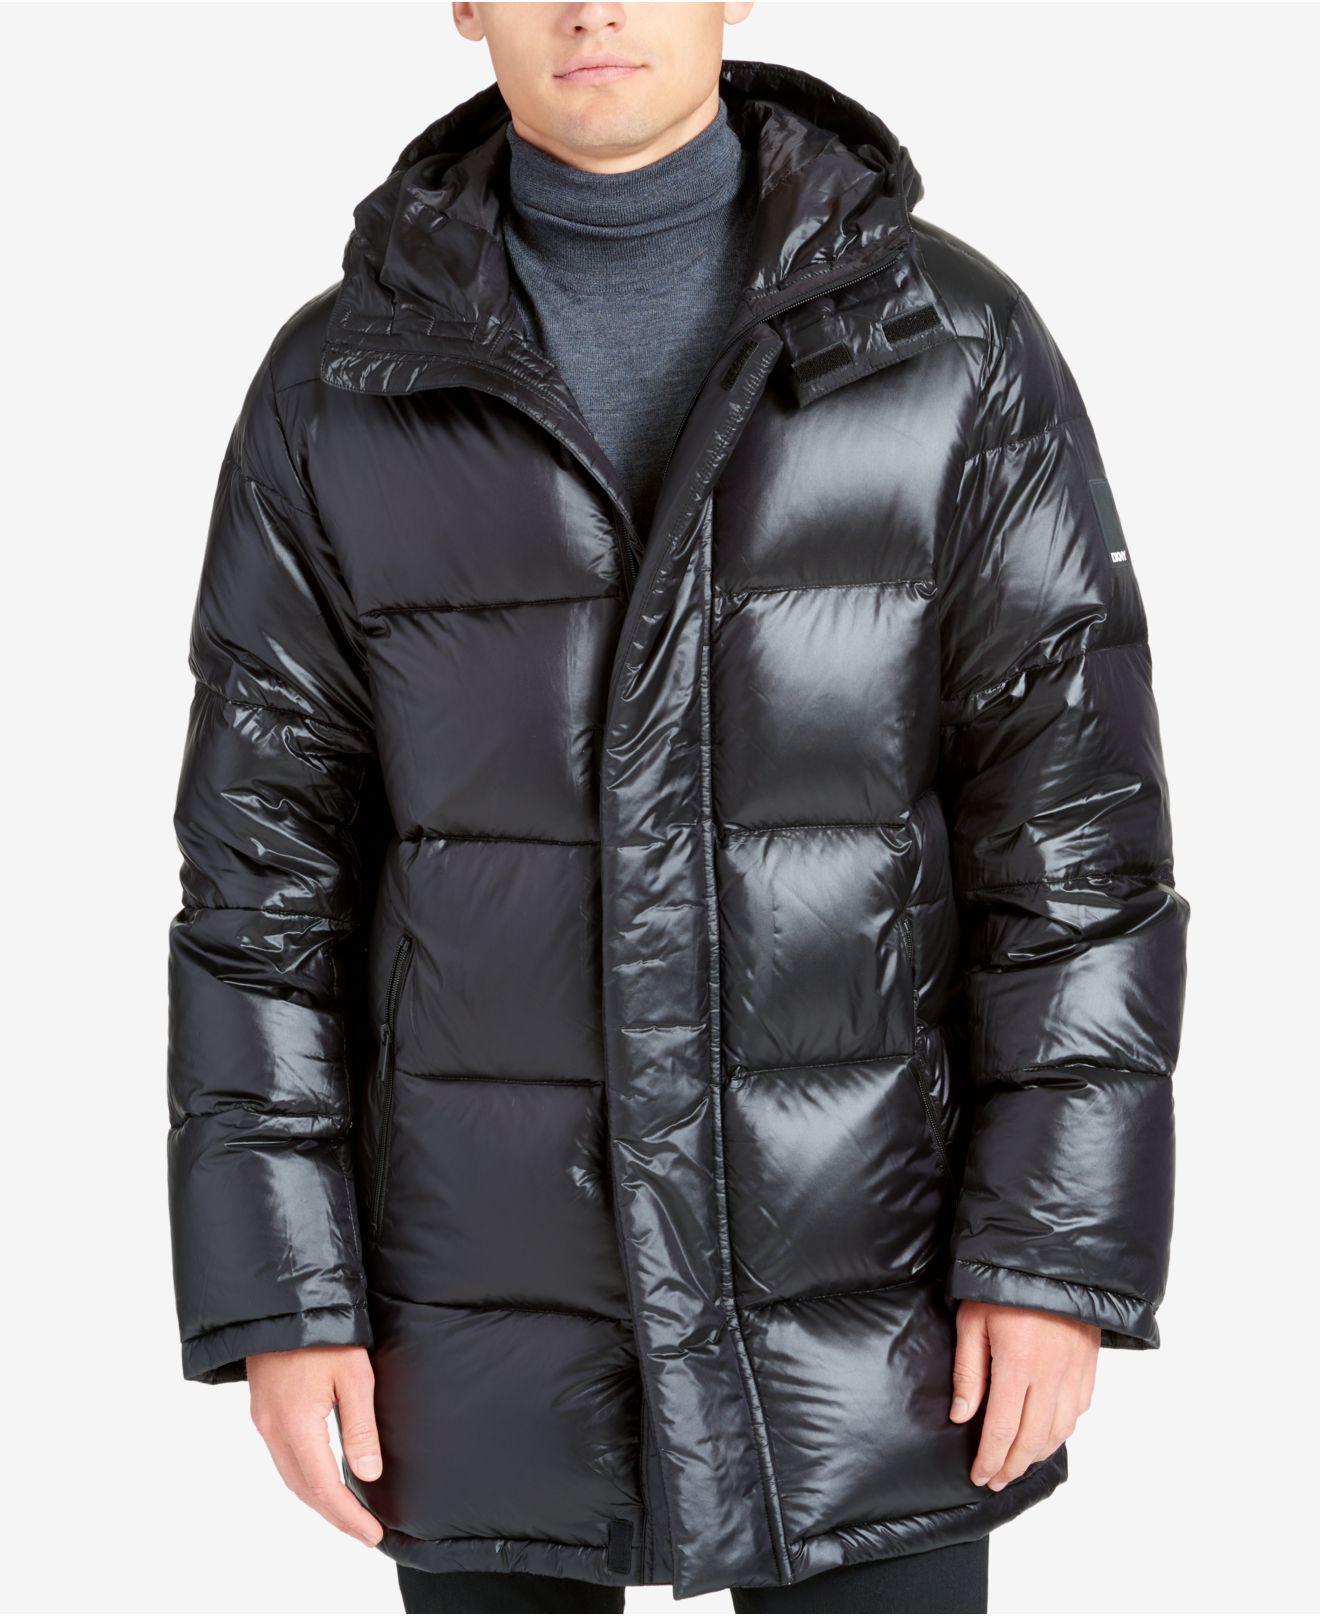 DKNY Men's Full-length Puffer Jacket in Black for Men - Lyst